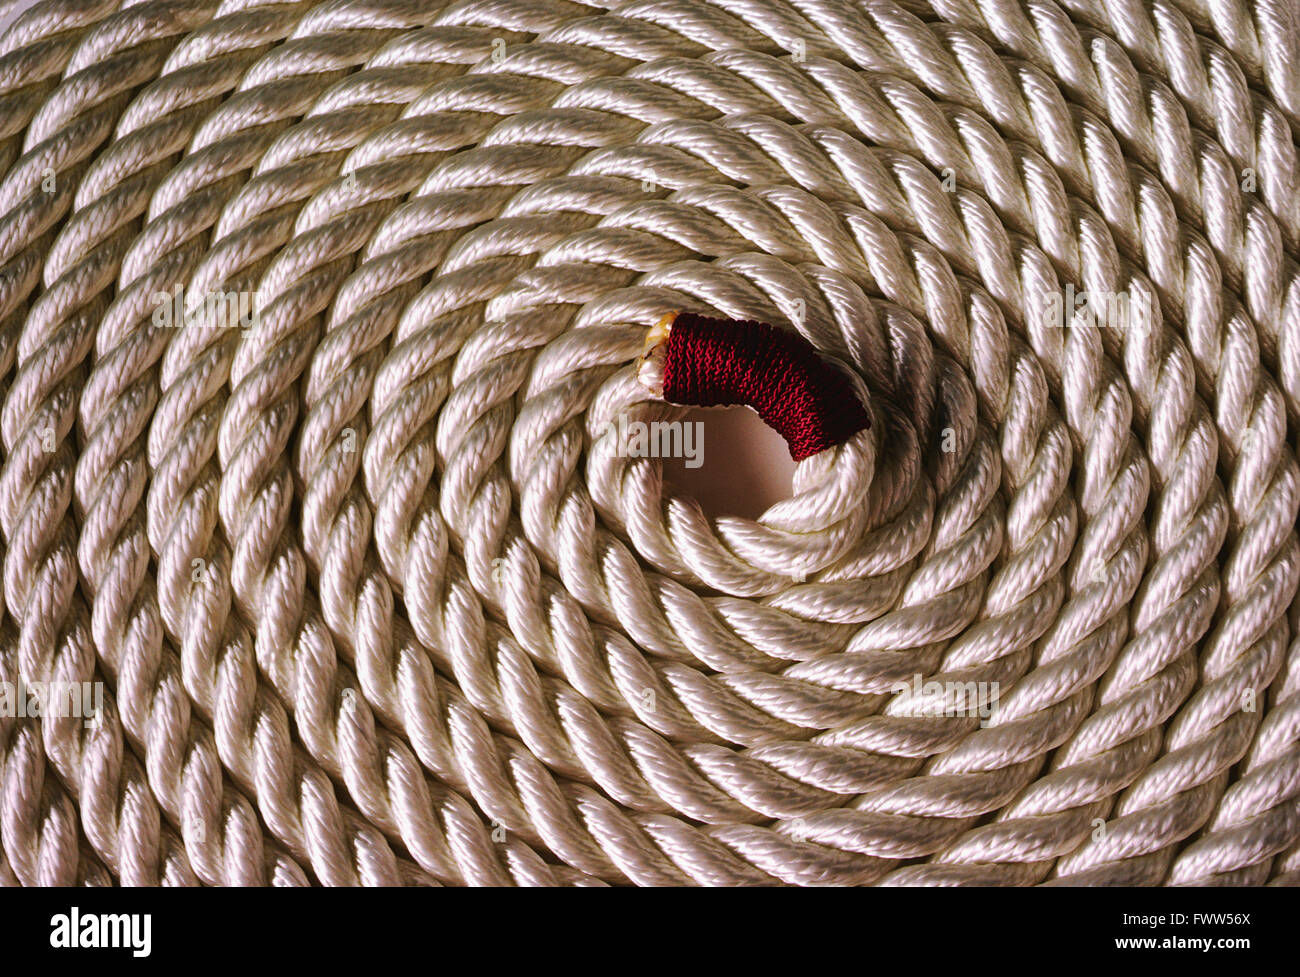 Heavy coiled white marina rope Stock Photo